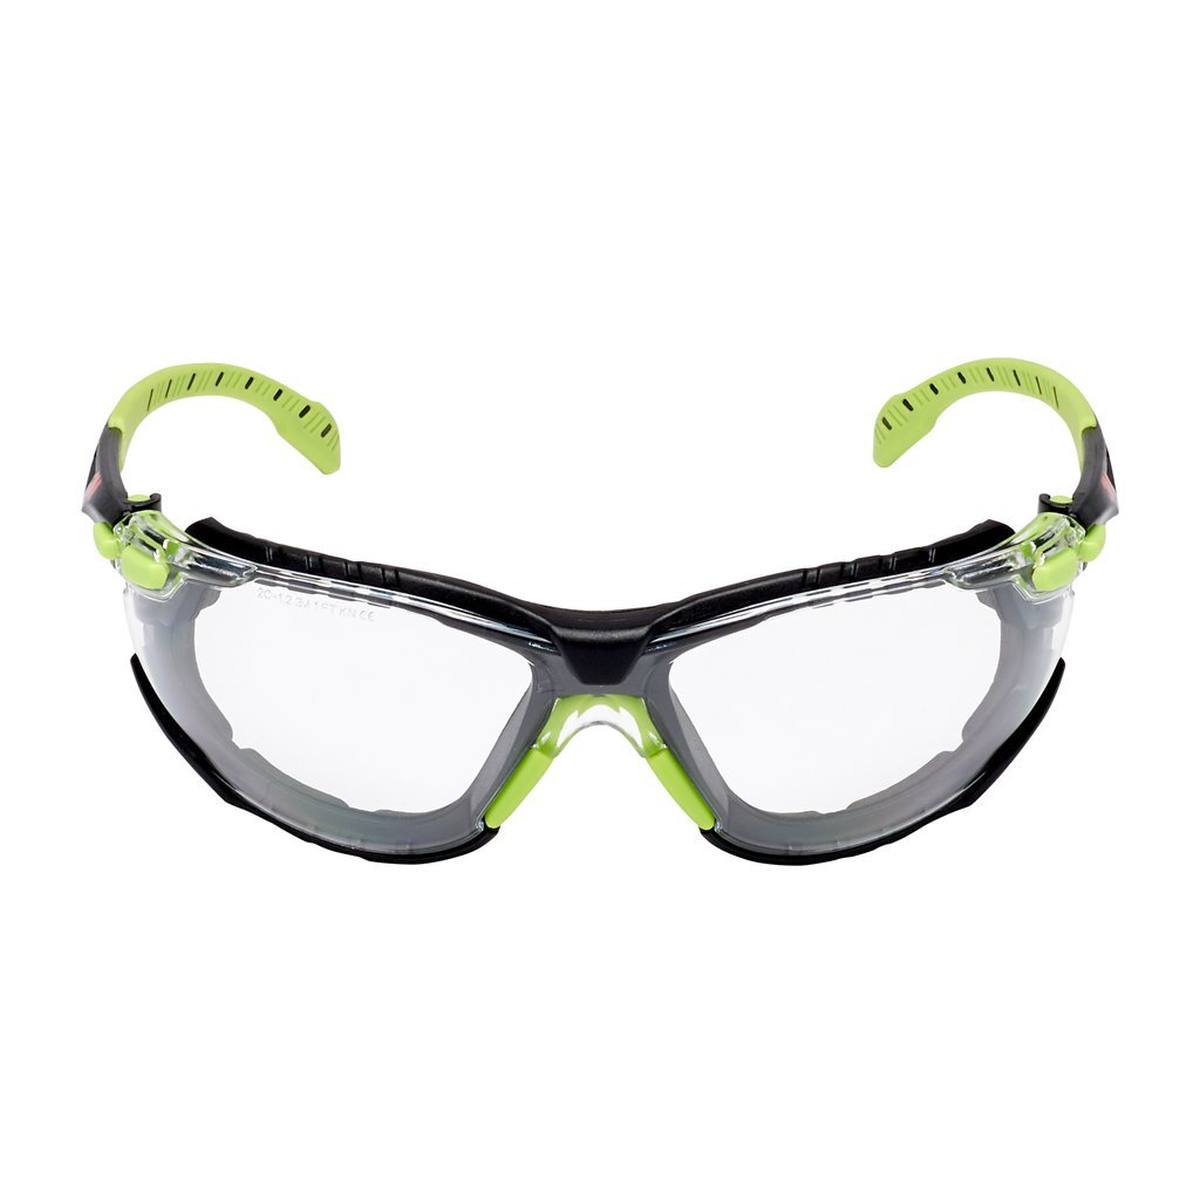 3M Solus 1000 Schutzbrille mit Antibeschlag-Beschichtung, grün/schwarz, transparent, mit Tasche S1CG